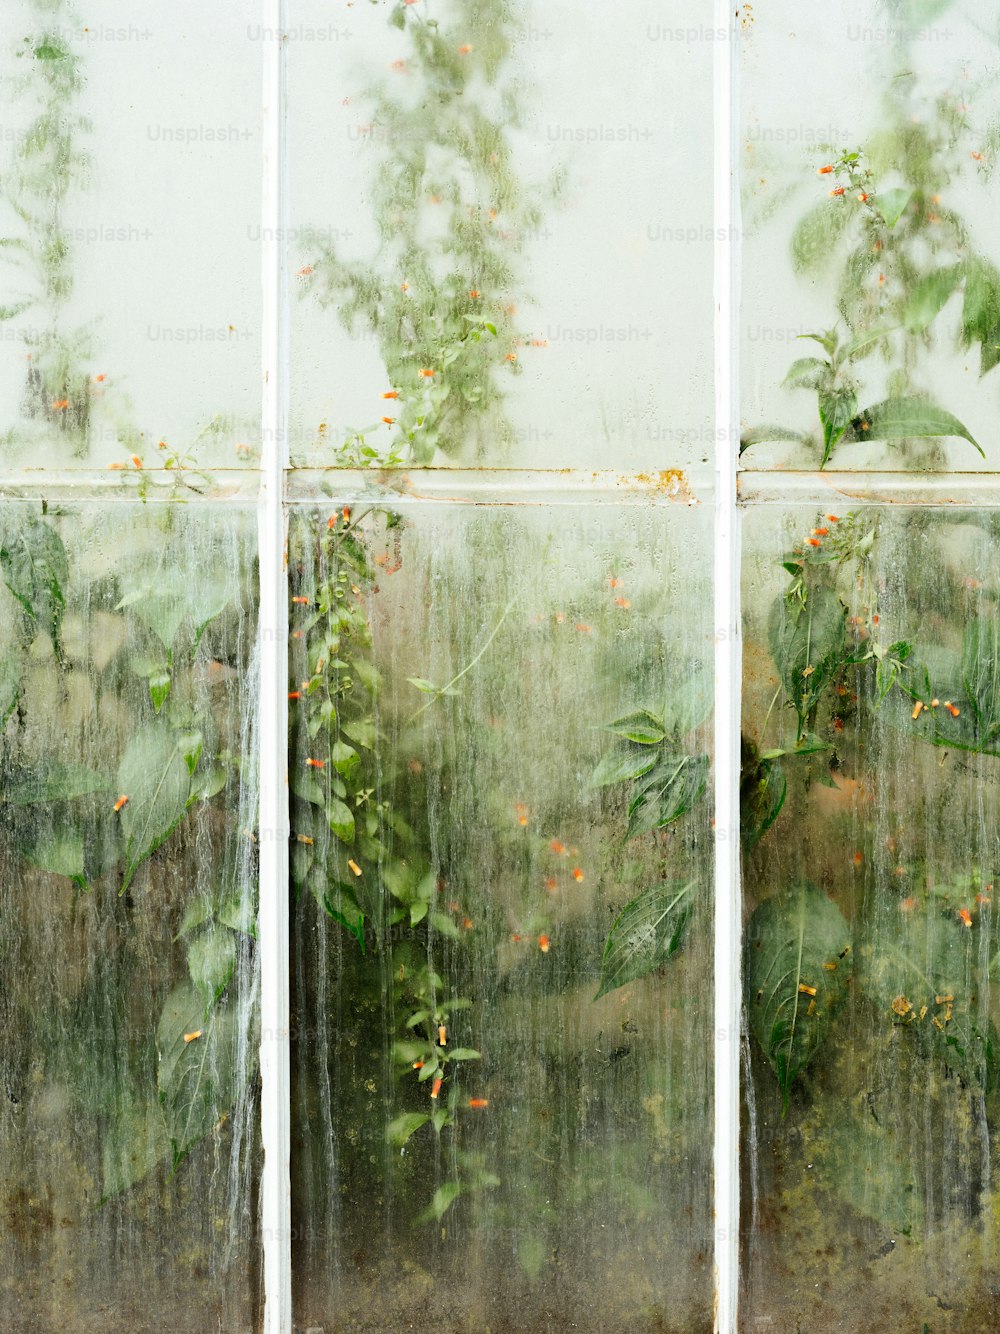 많은 식물이 자라는 창문